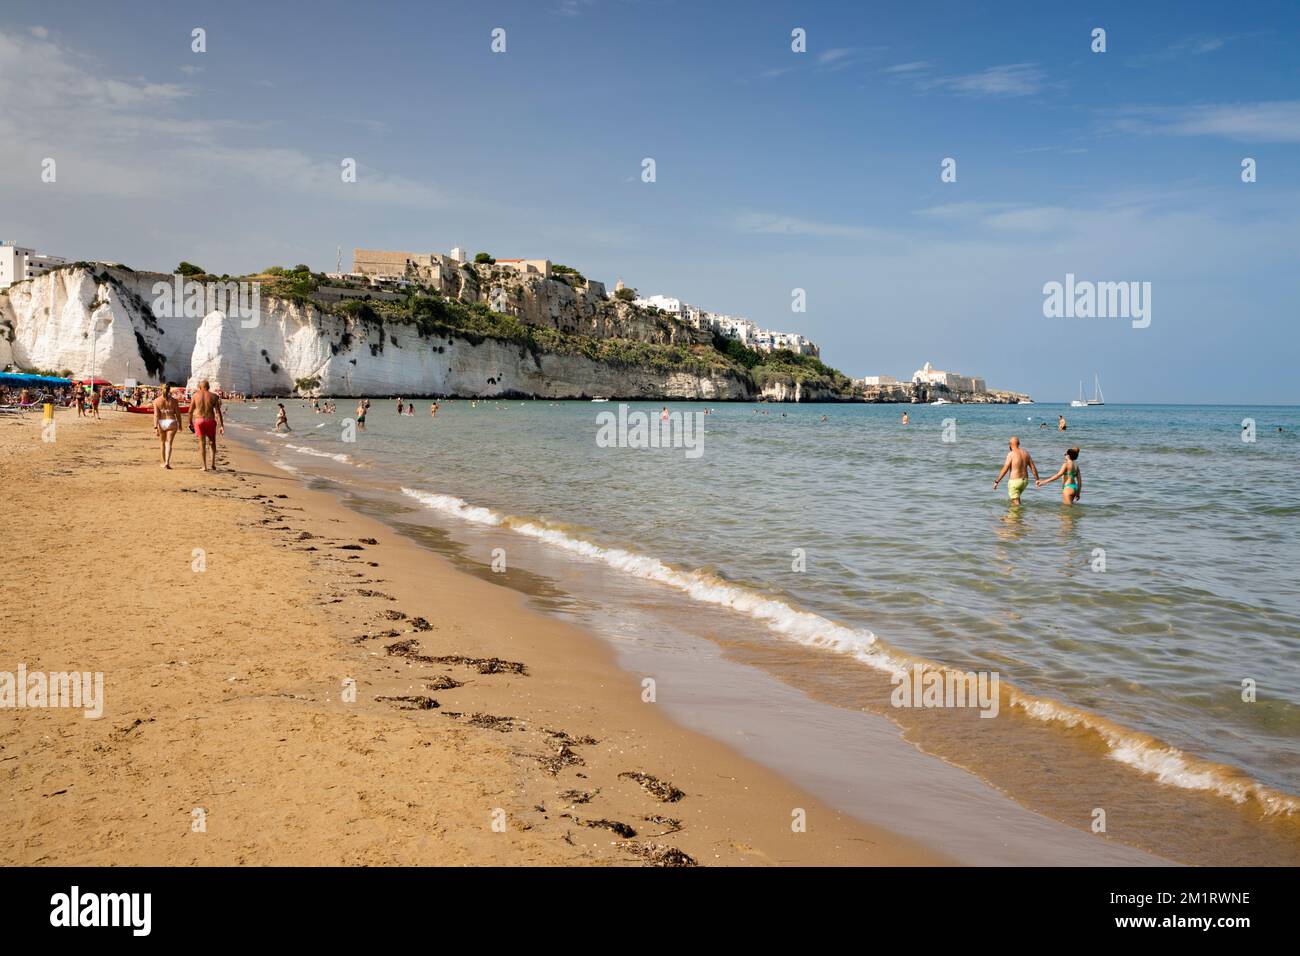 Vue sur la plage avec la vieille ville de Vieste sur les falaises blanches au-dessus, Vieste, péninsule de Gargano, province de Foggia, Puglia, Italie, Europe Banque D'Images